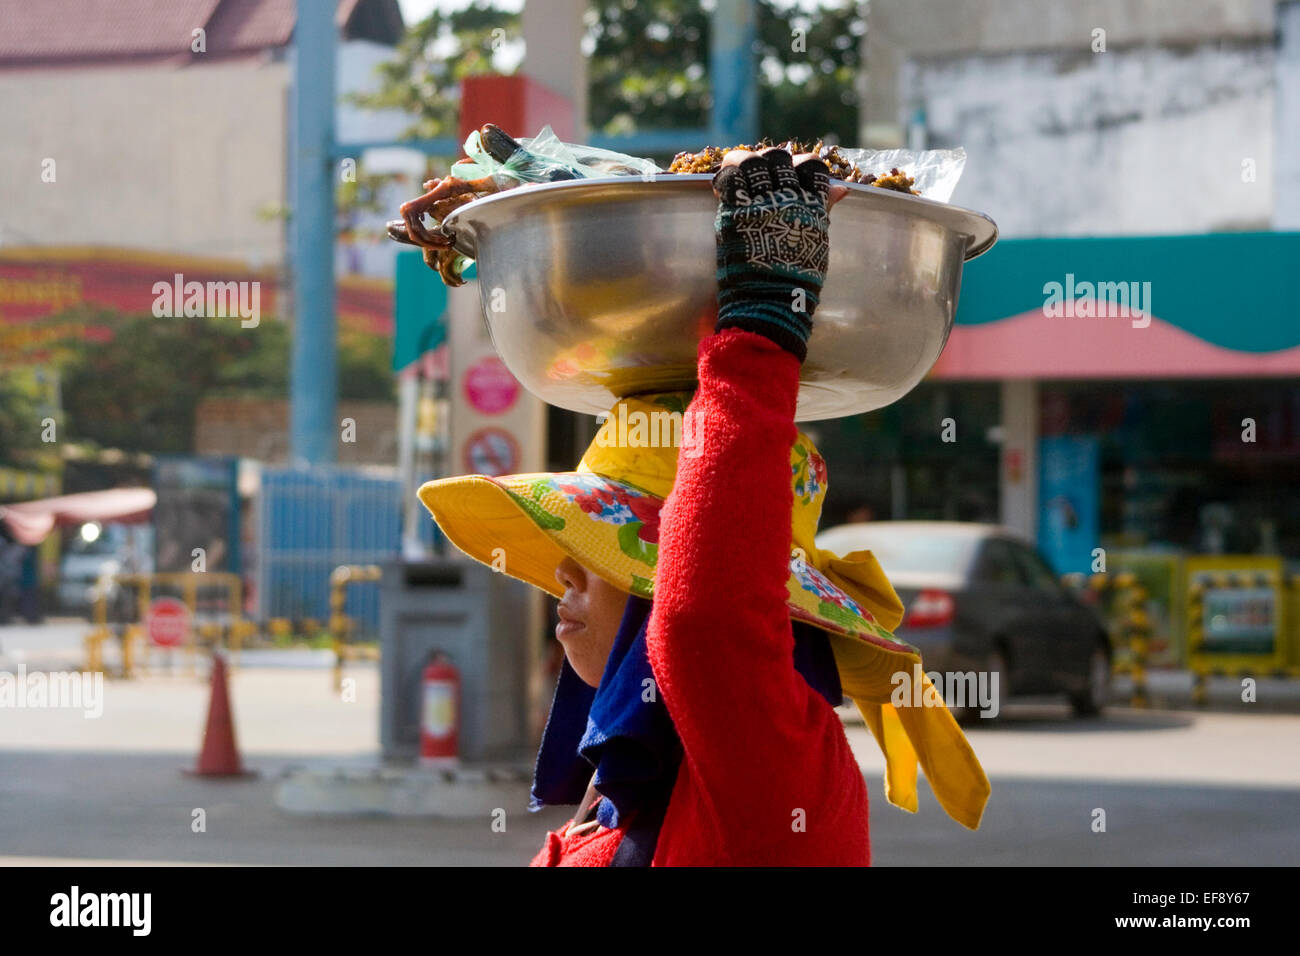 Eine Frau ist, dass Carriyng eine Schüssel mit gegrilltem Fleisch oben auf ihren Kopf auf einer Stadtstraße in Kampong Cham, Kambodscha. Stockfoto